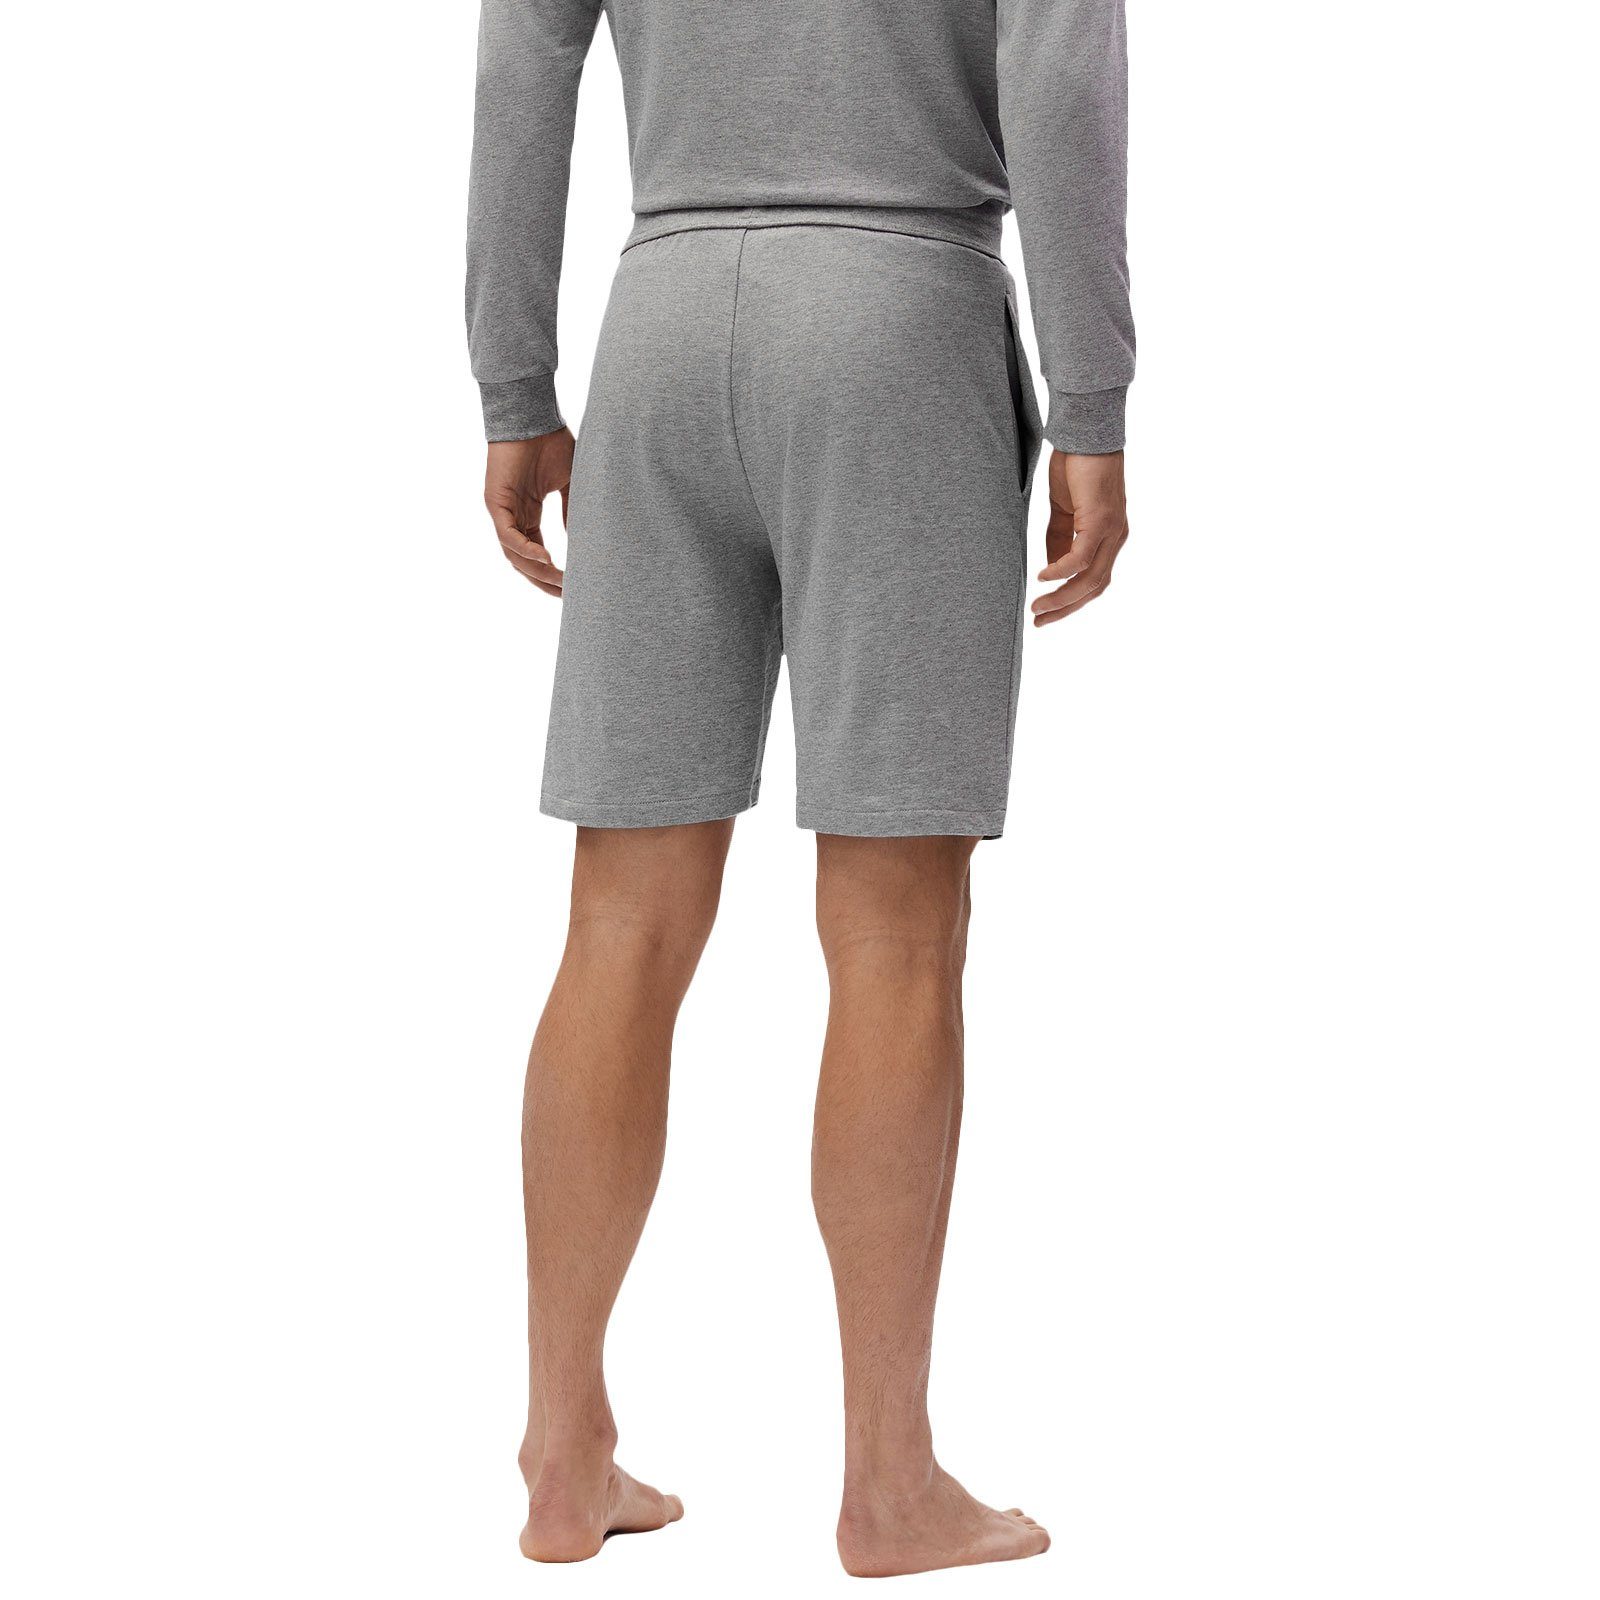 BOSS Shorts grey kontrastfarbenen Streifen medium 033 Shorts Authentic mit